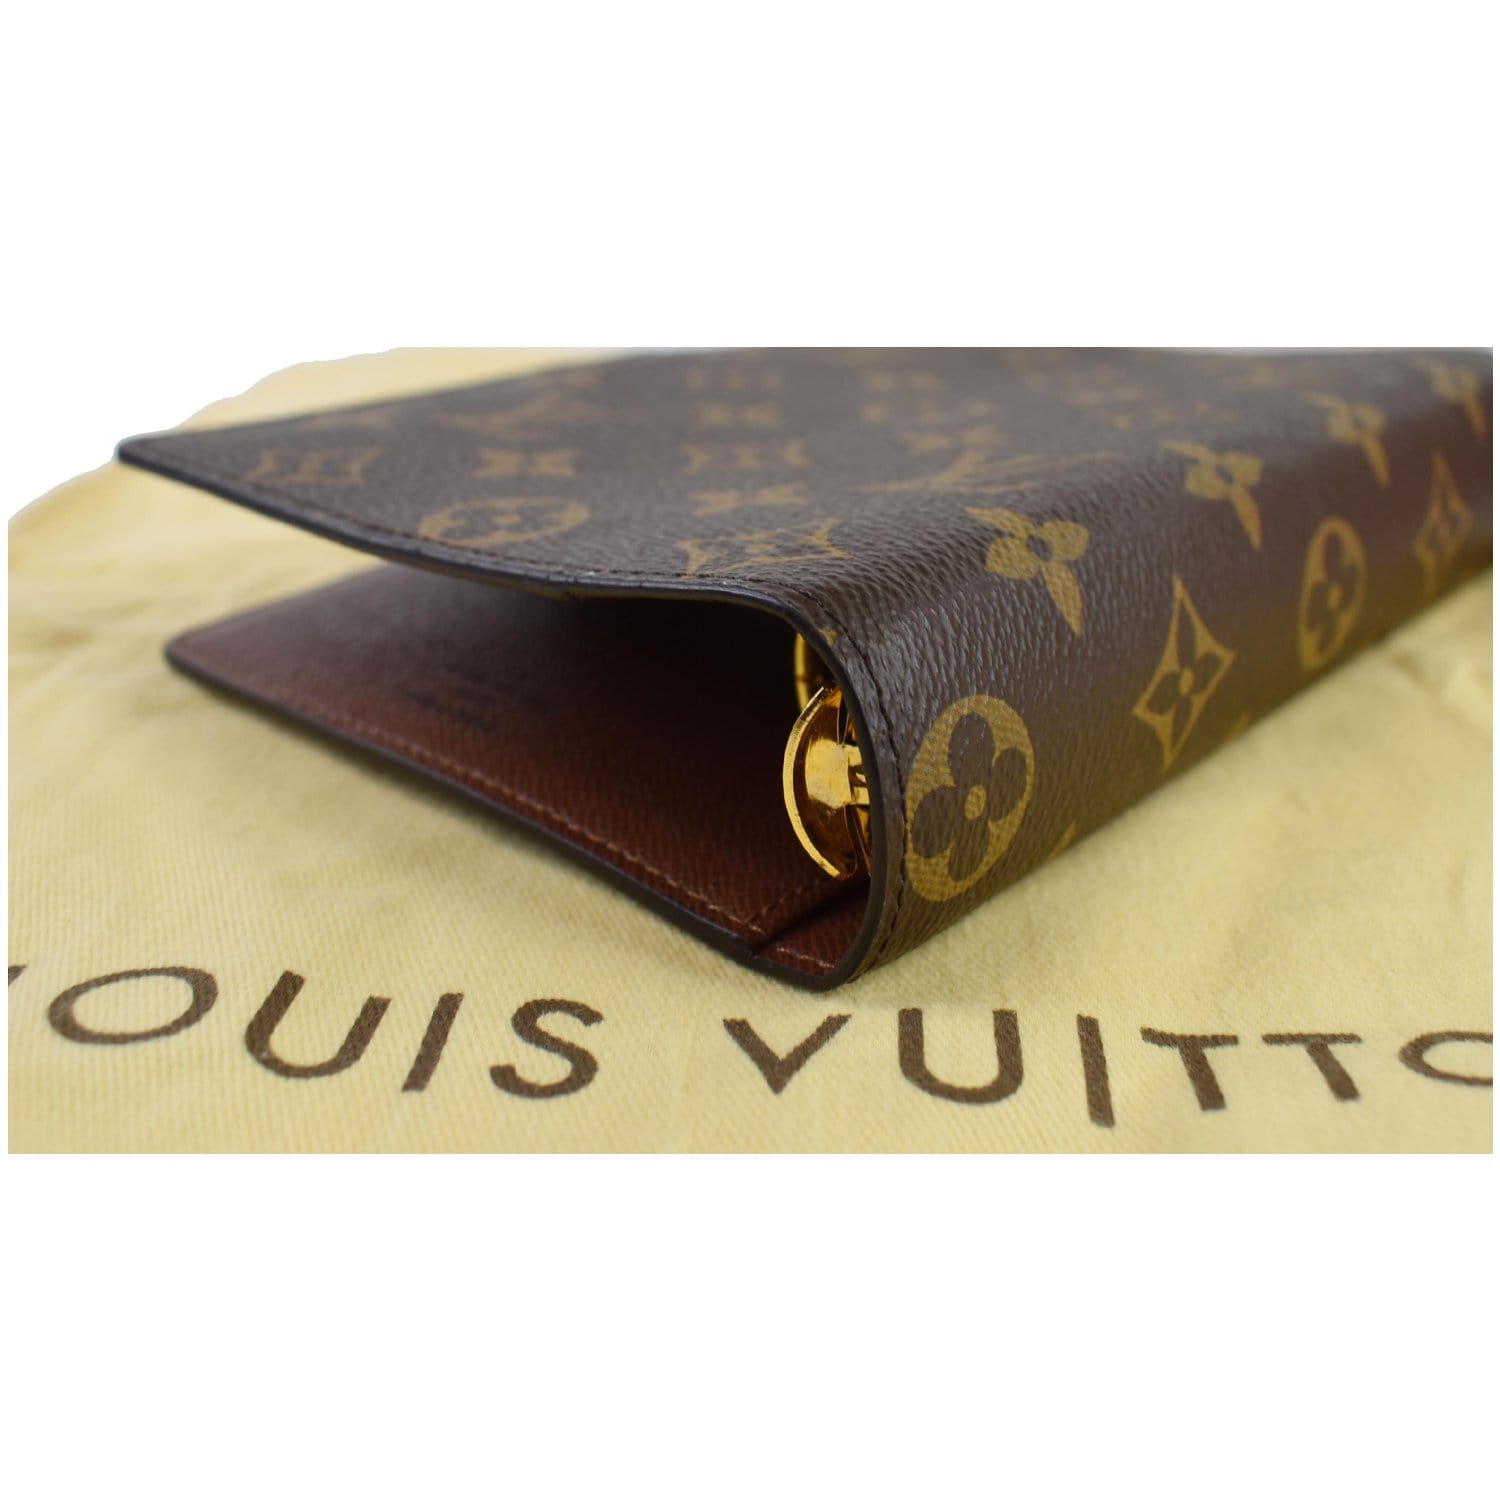 Authentic Louis Vuitton Agenda MM Size  eBay